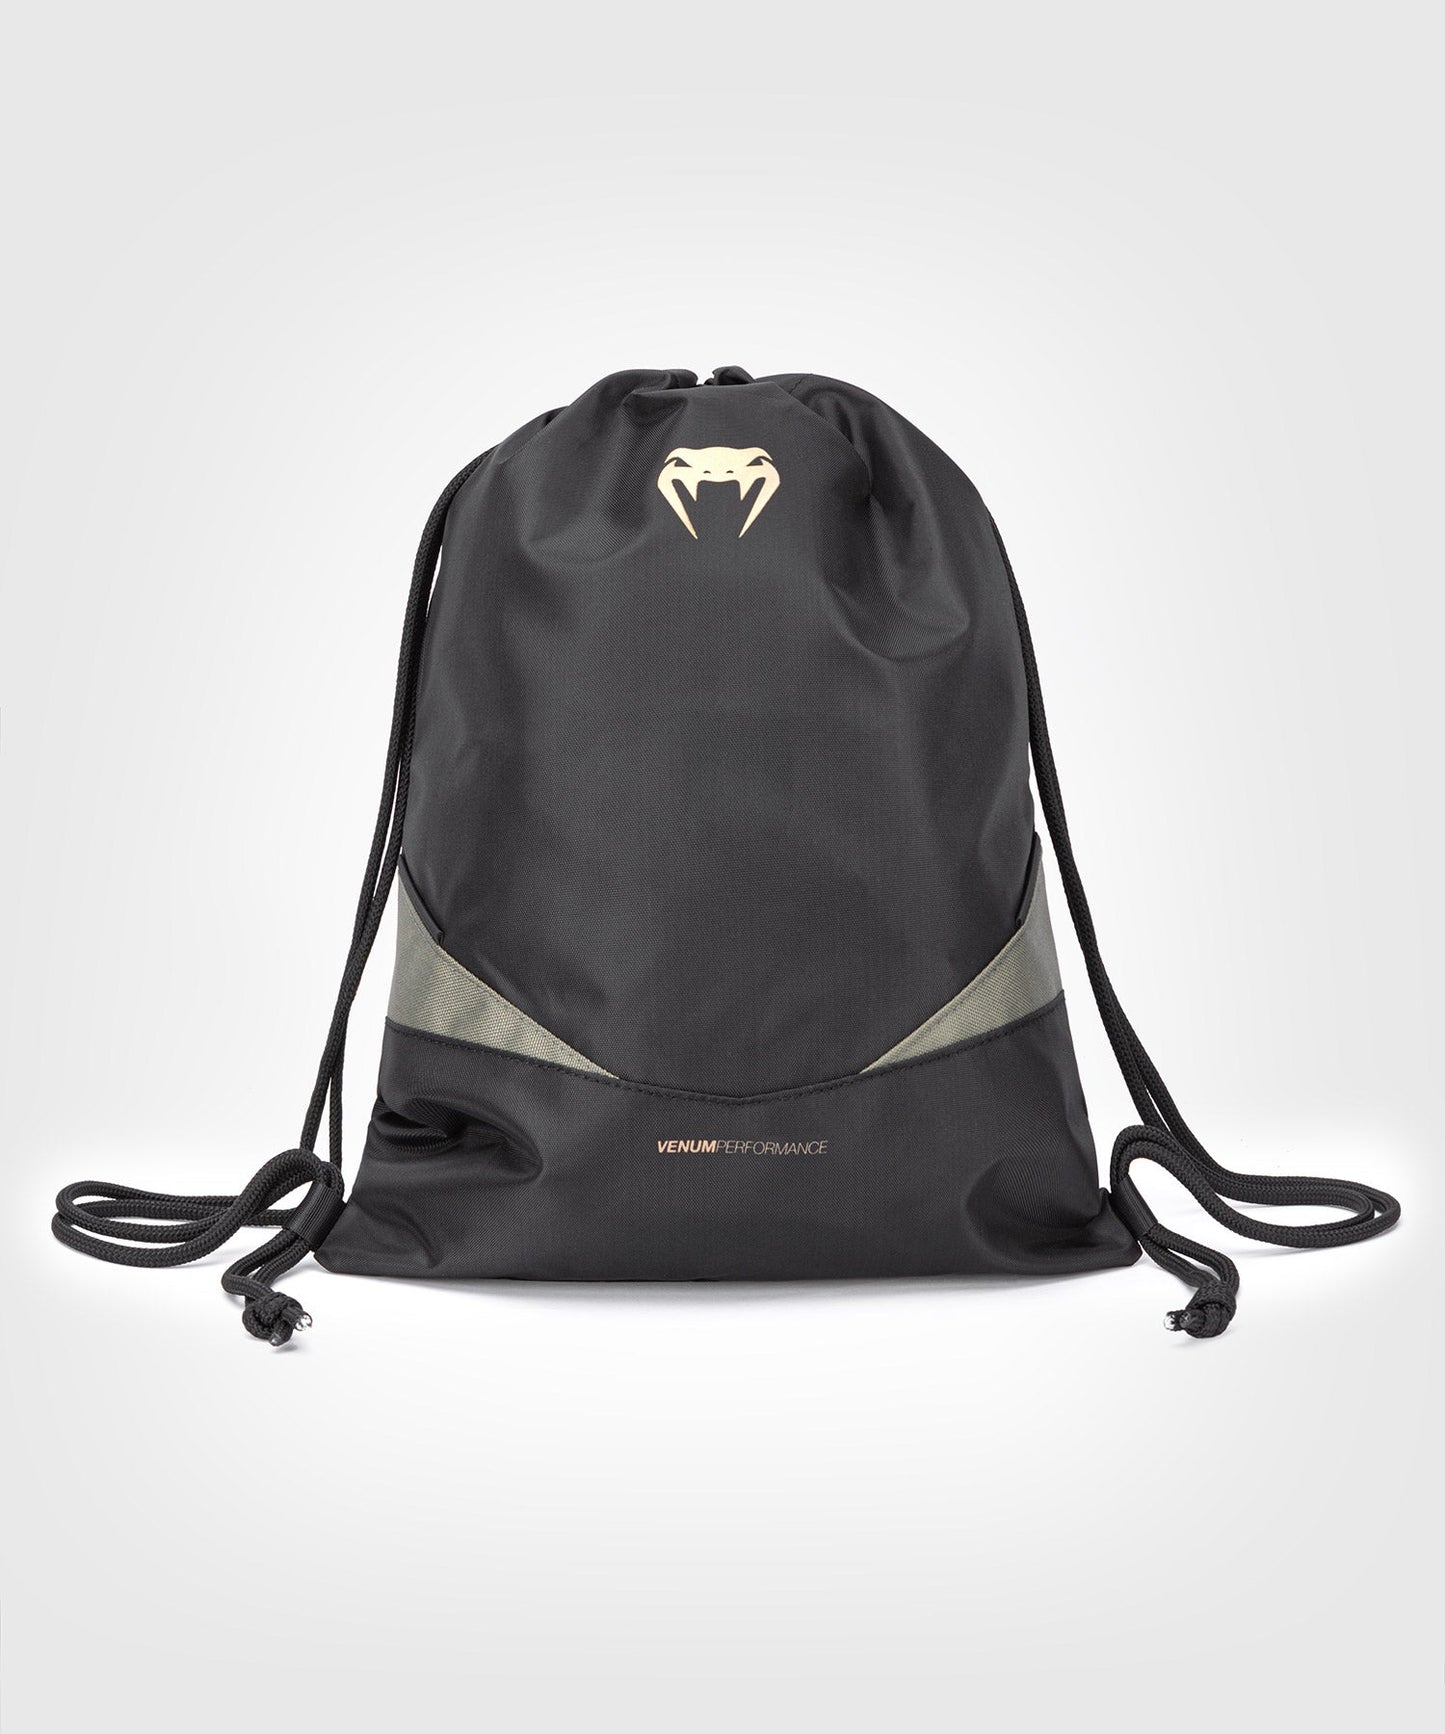 Venum Evo 2 Drawstring Bag - Black/Khaki